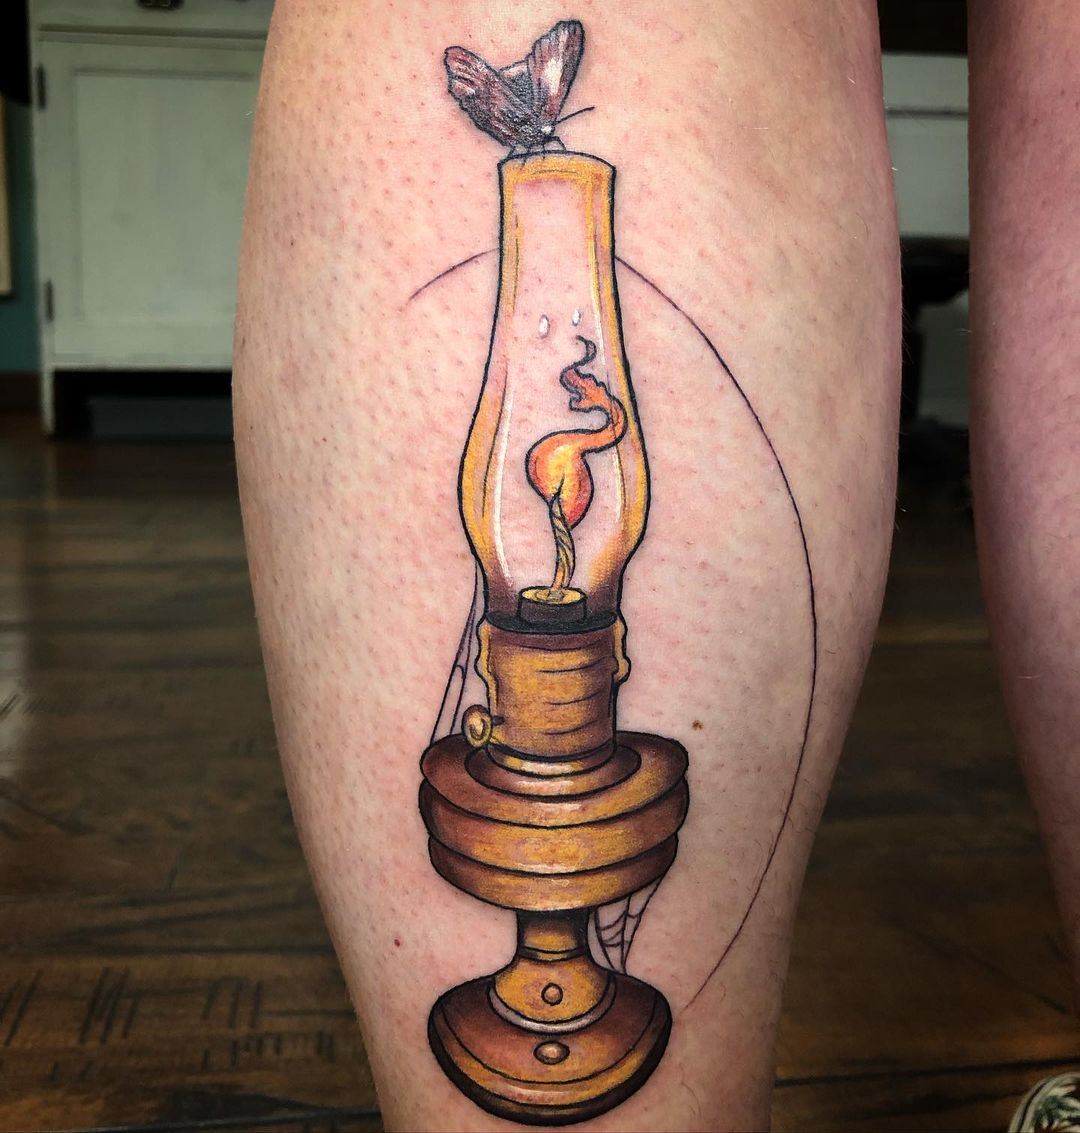 oil lamp leg tattoo